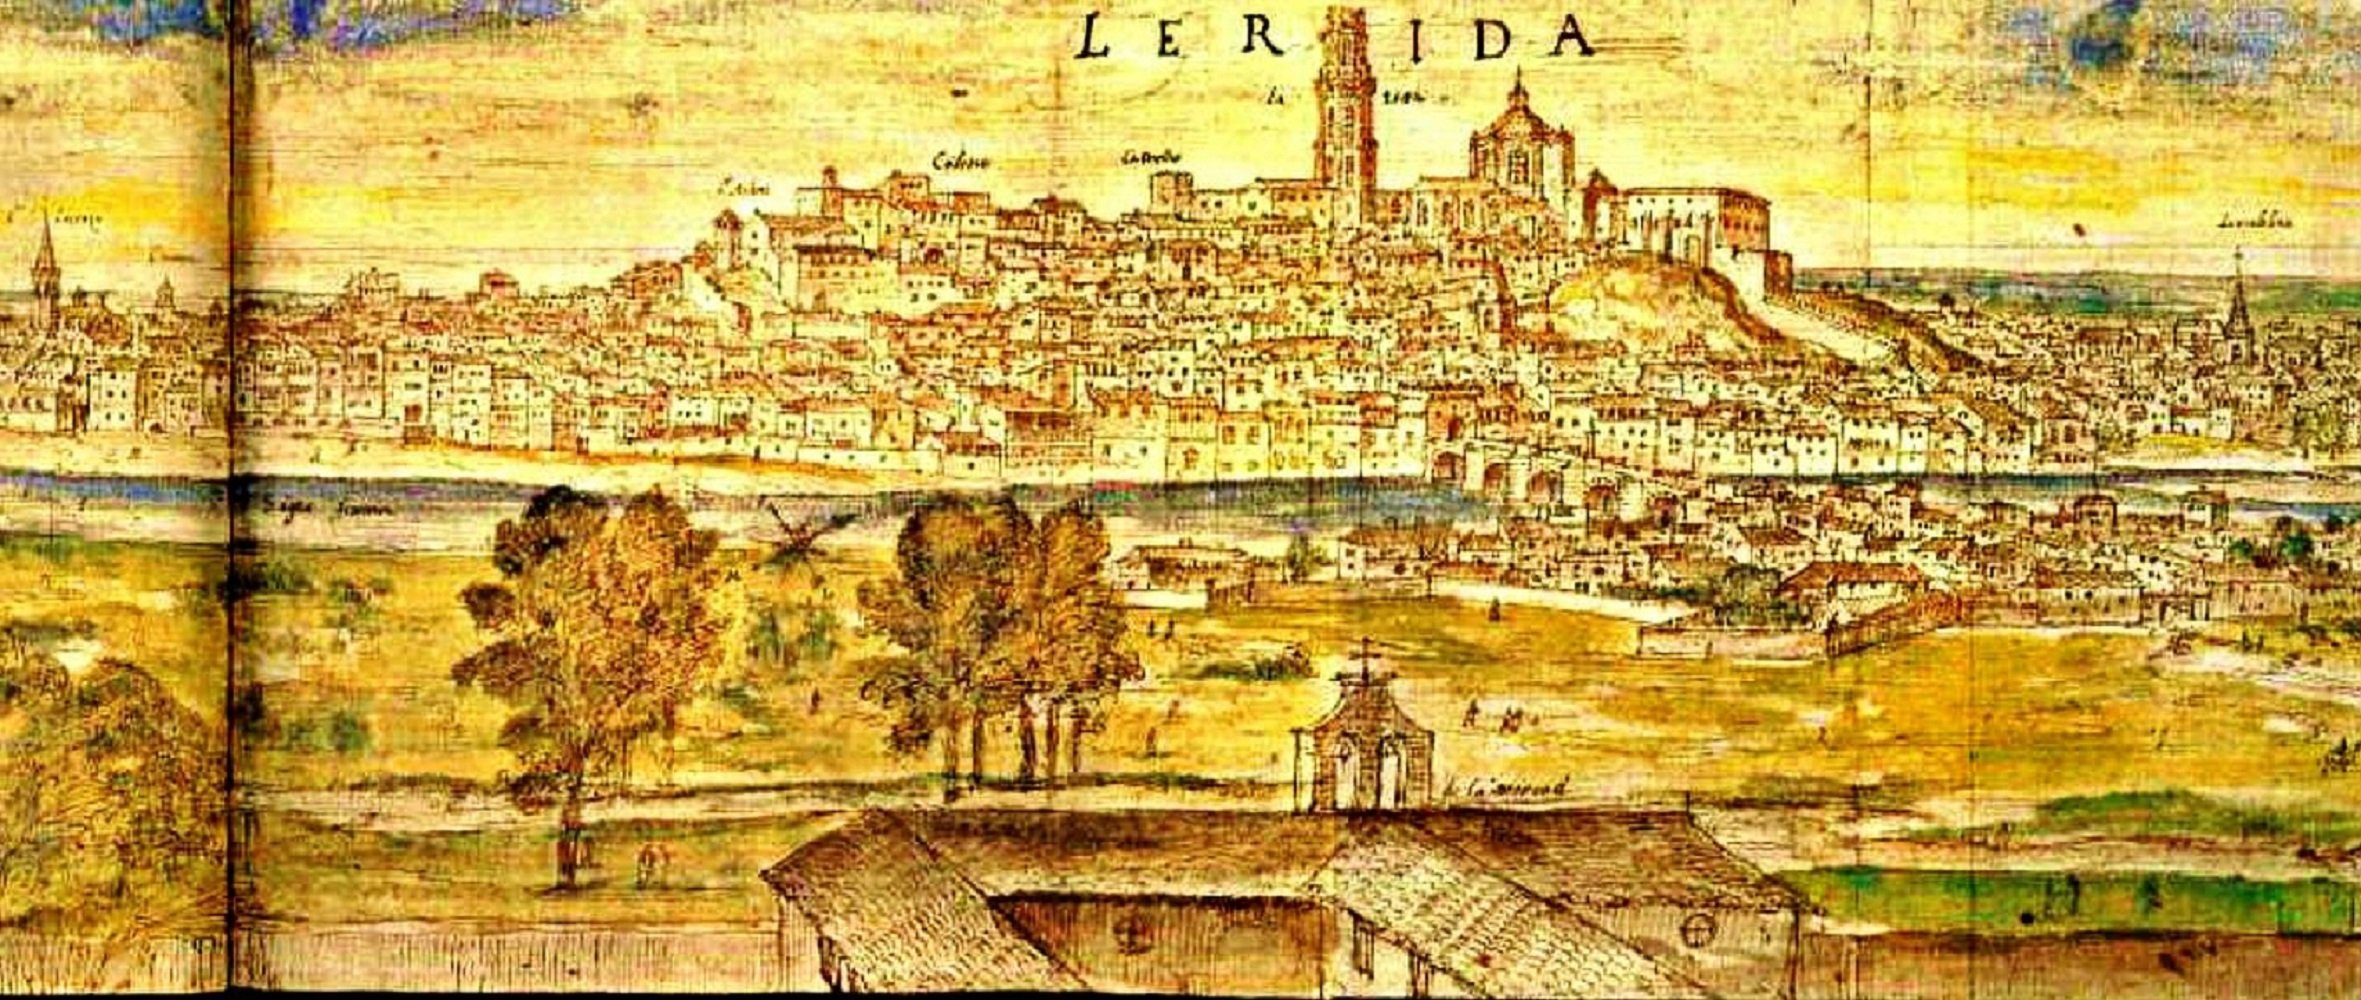 Es funda l’Estudi General de Lleida, la primera universitat de la Corona d’Aragó